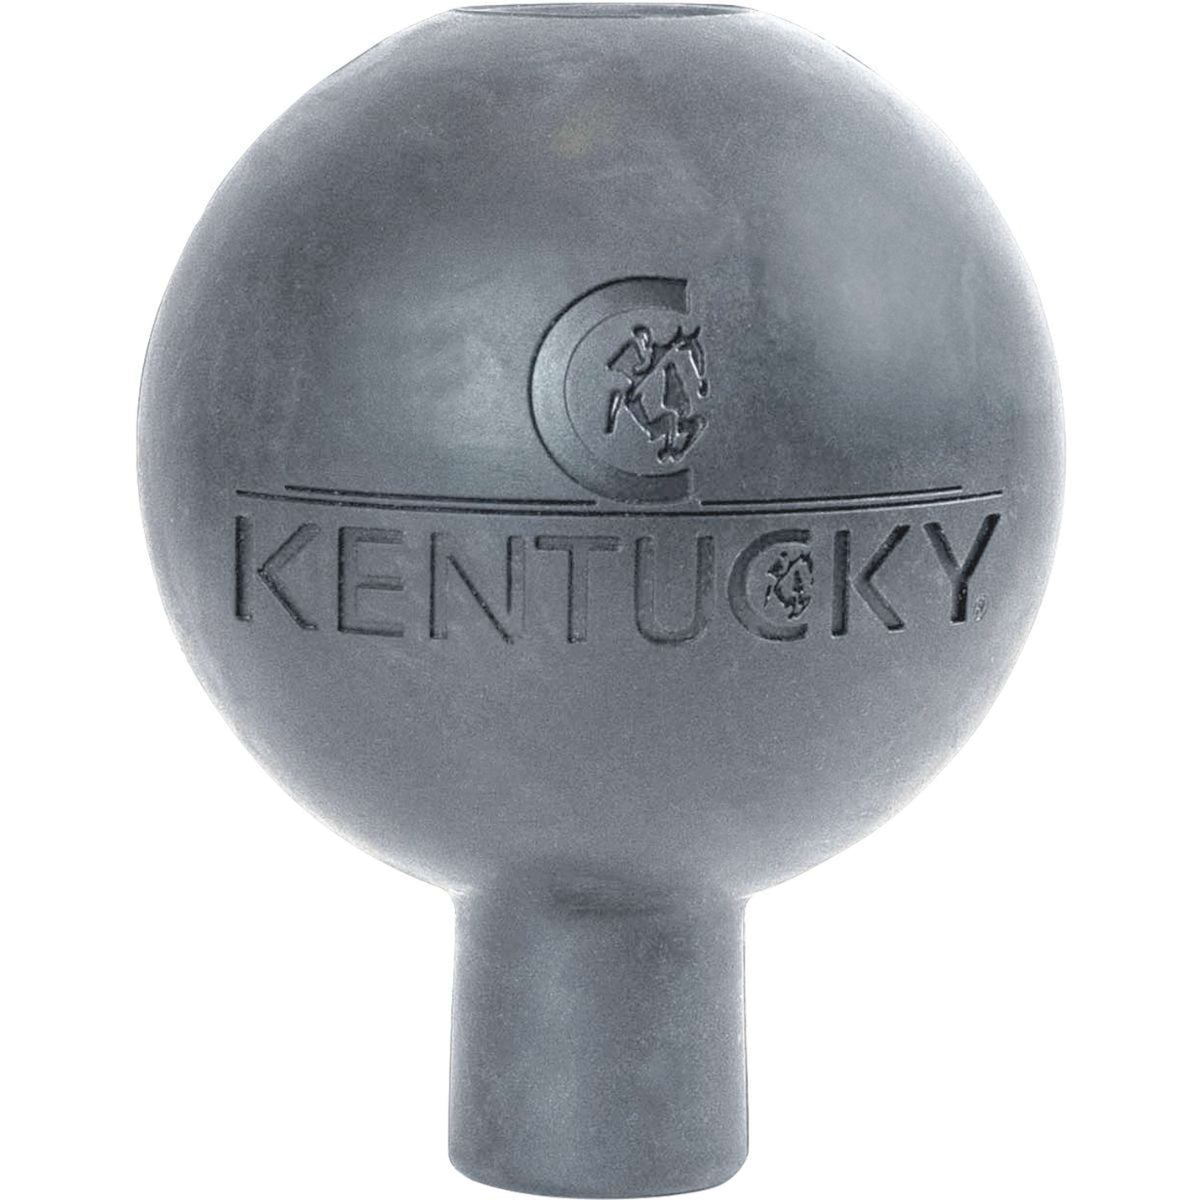 Kentucky Schutzball Rubber Grau